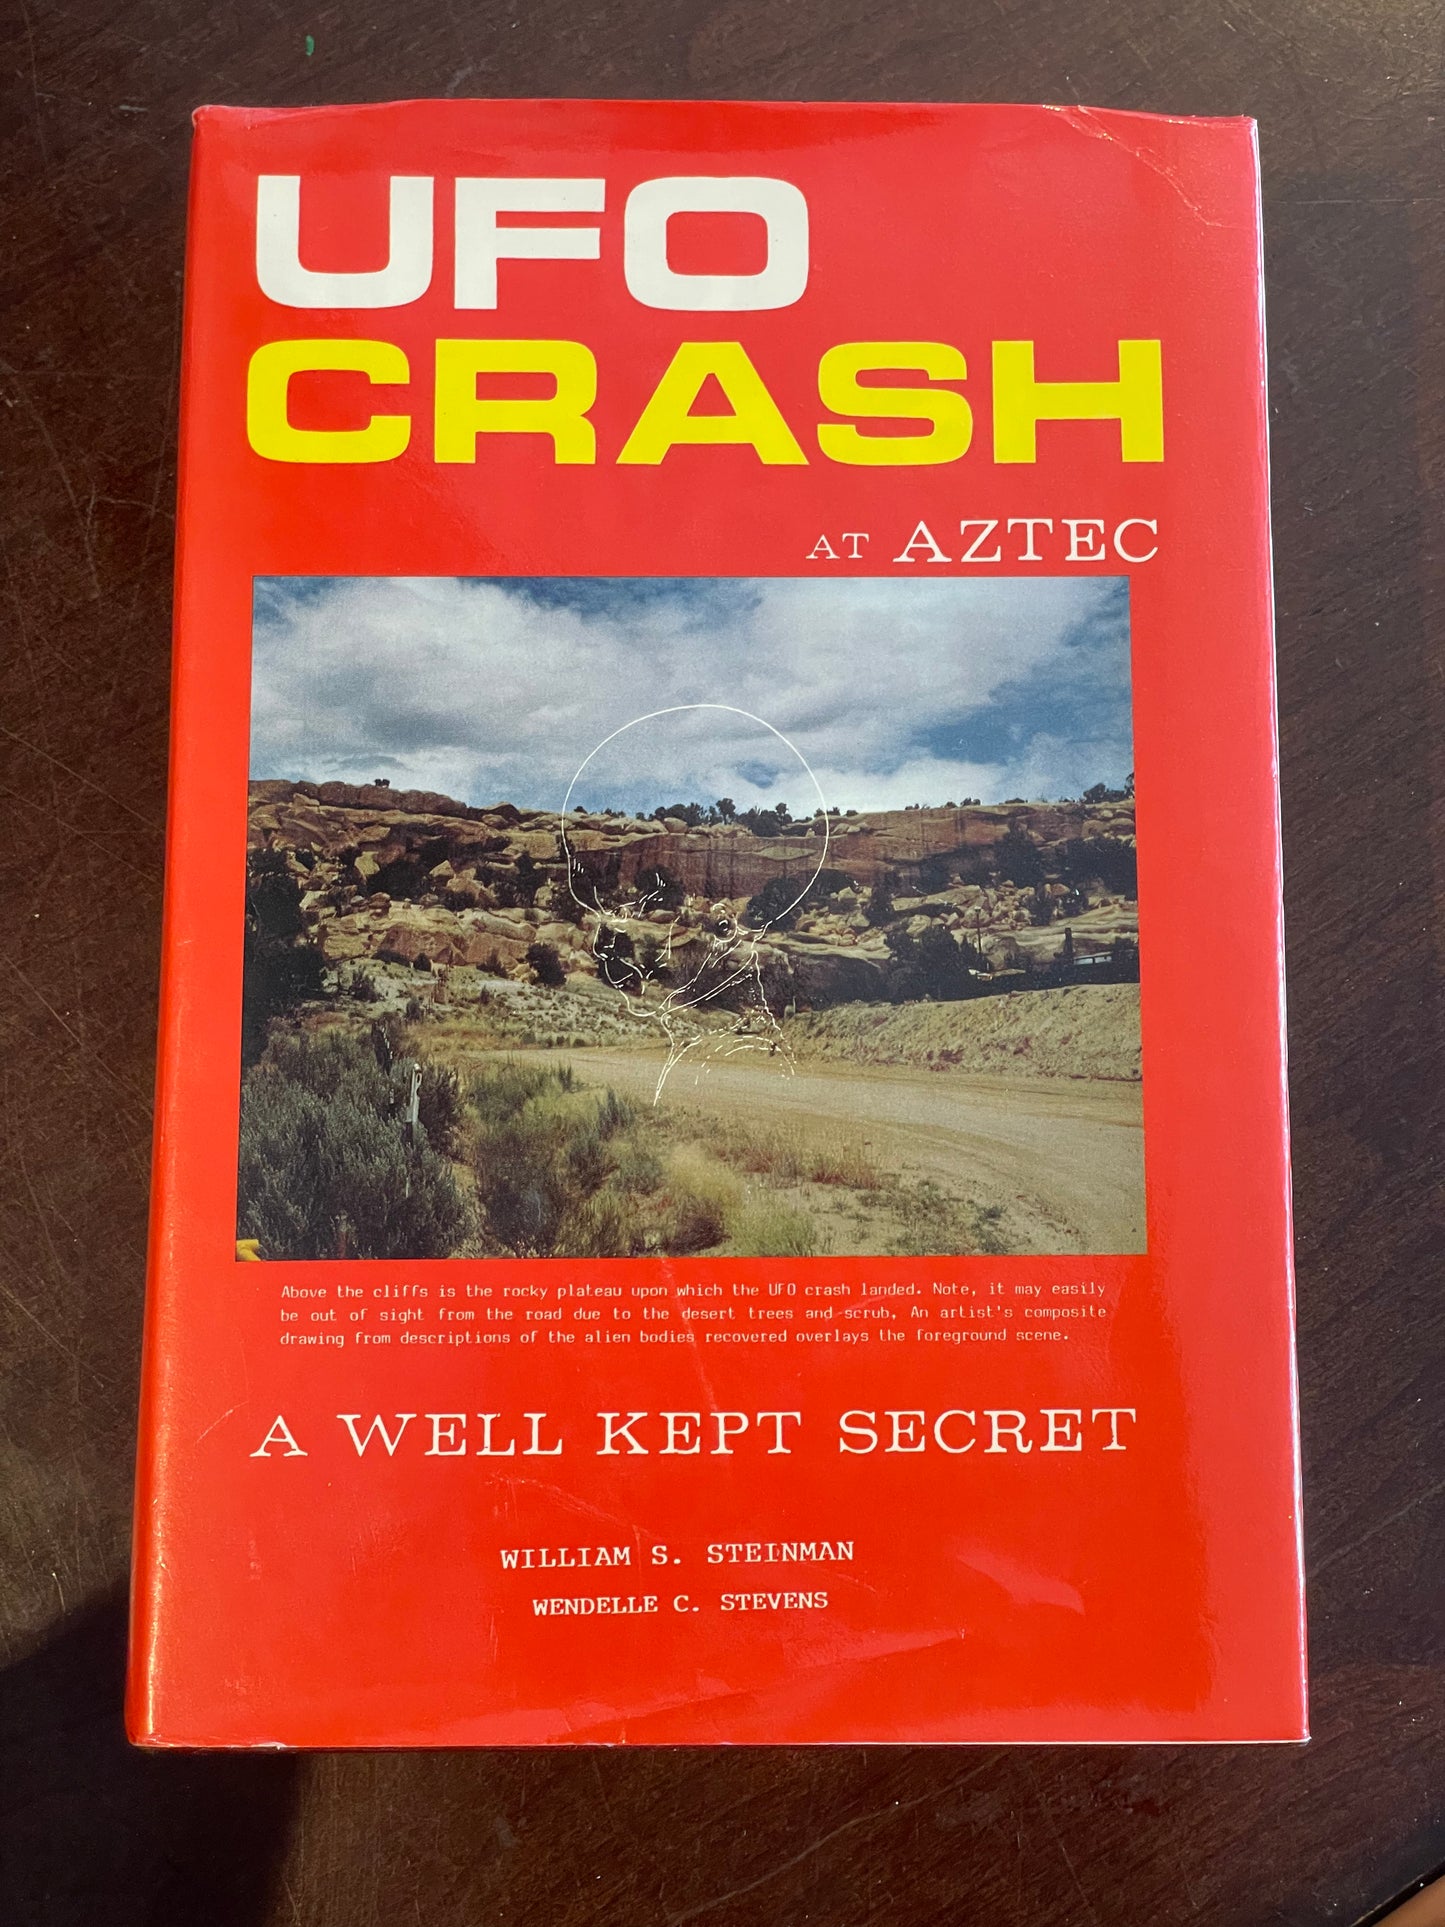 UFO Crash at Aztec by William Steinman